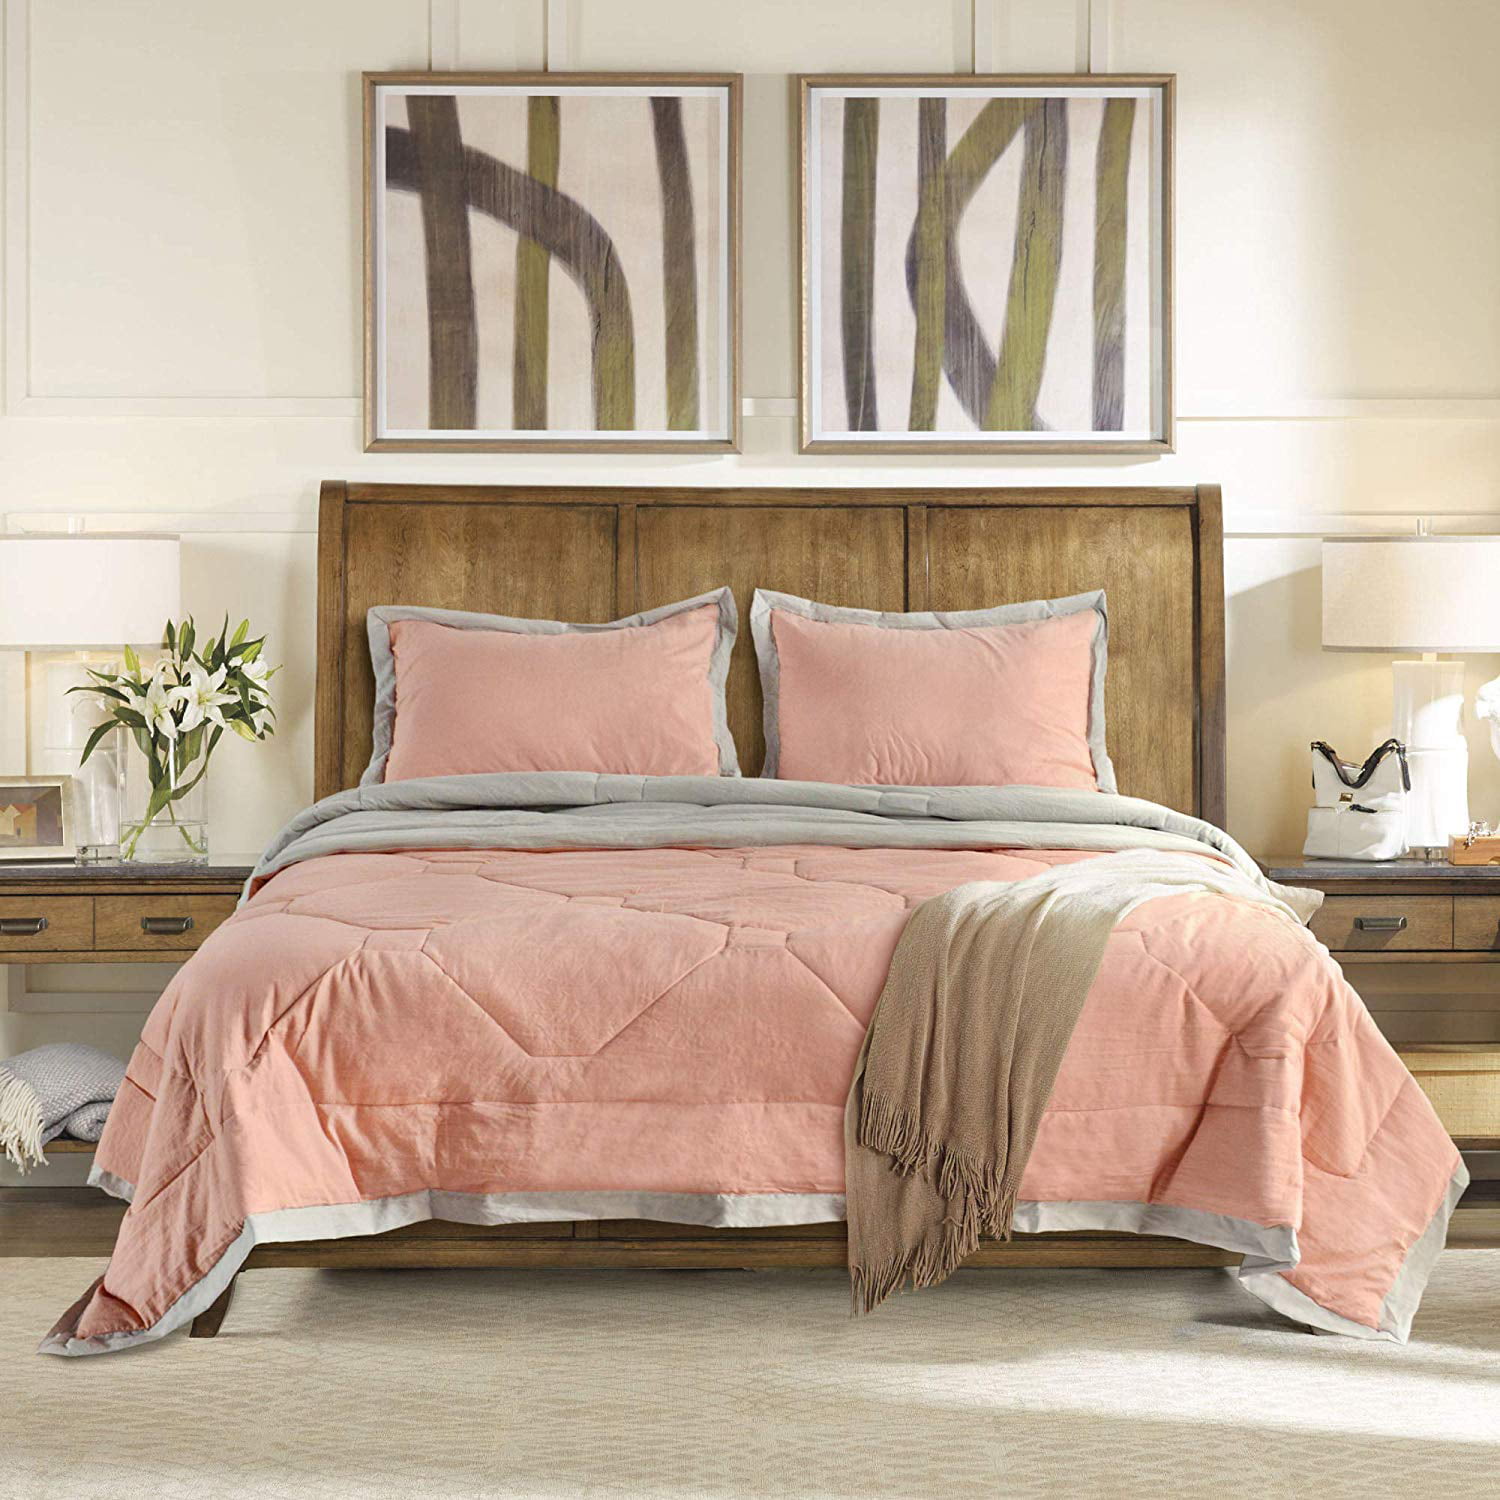 Kasentex Hotel Reversible Quilted Comforter Set 2-tone Grey Border Design 